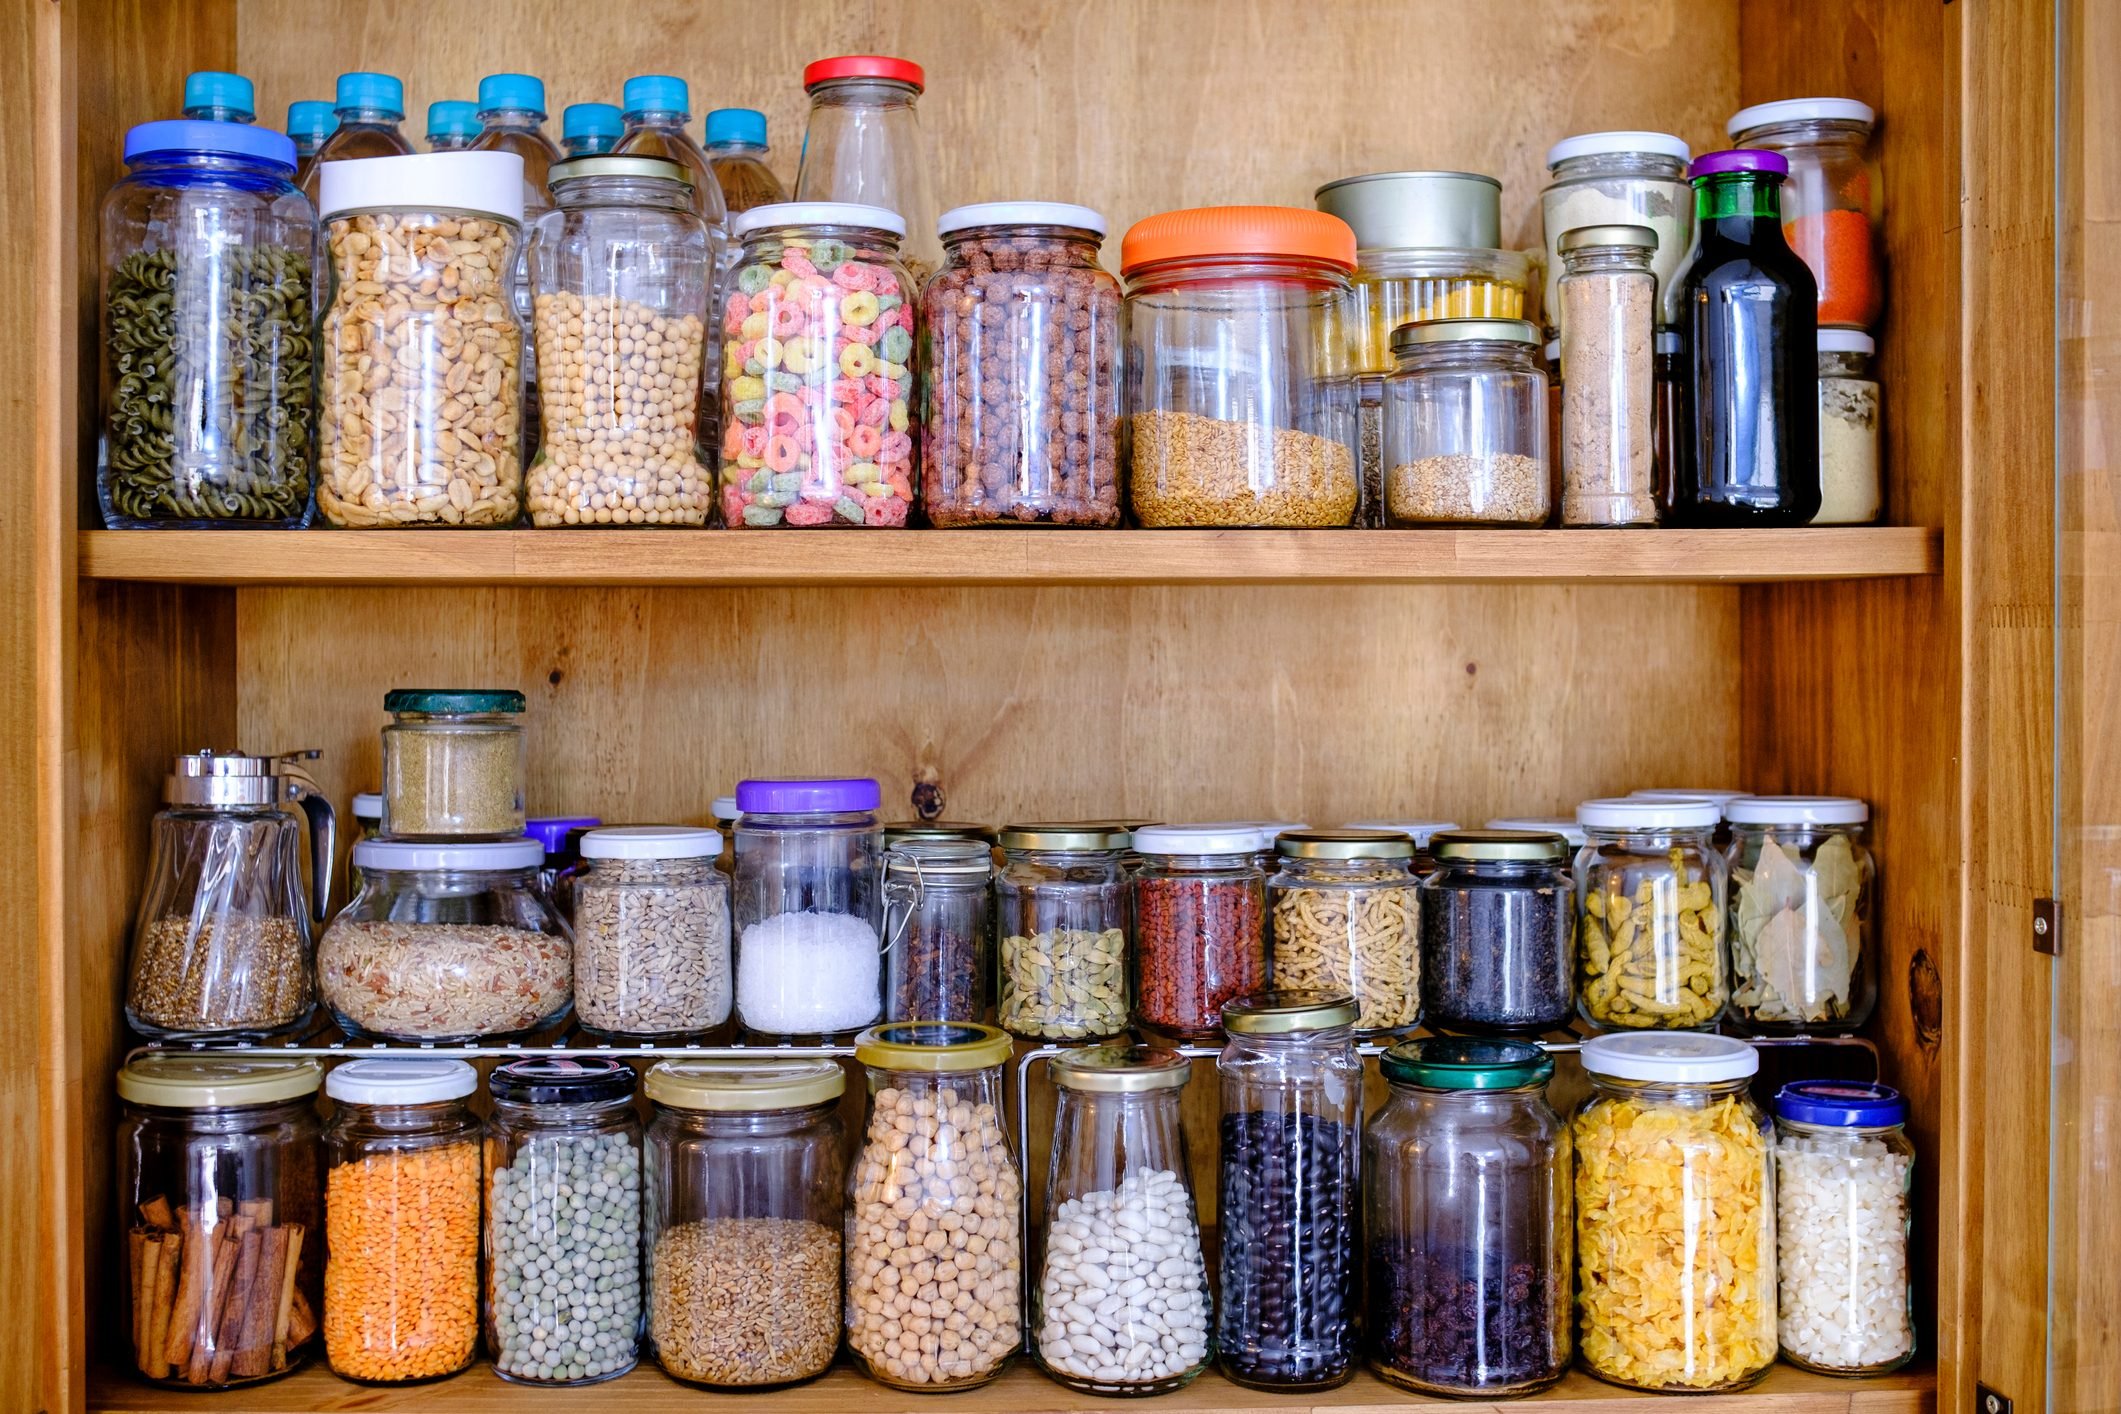 12 Small Kitchen Organization Ideas - Simply Quinoa